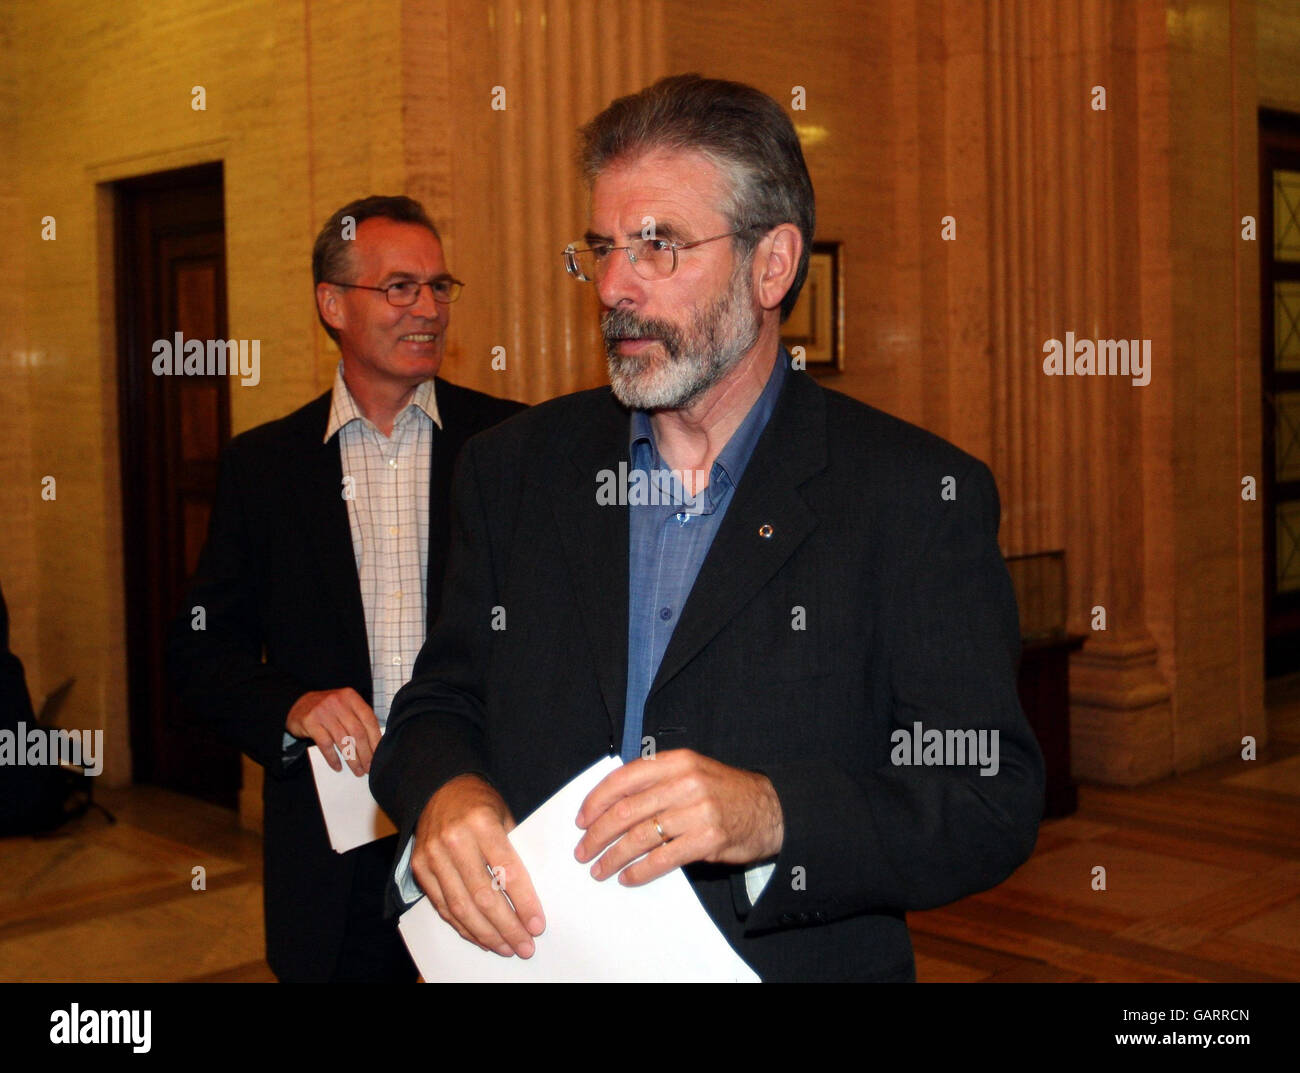 Il presidente del Sinn Fein Gerry Adams e Gerry Kelly, a sinistra, arrivano a leggere una dichiarazione ai media presso gli edifici del Parlamento, Stormont, Belfast. Foto Stock